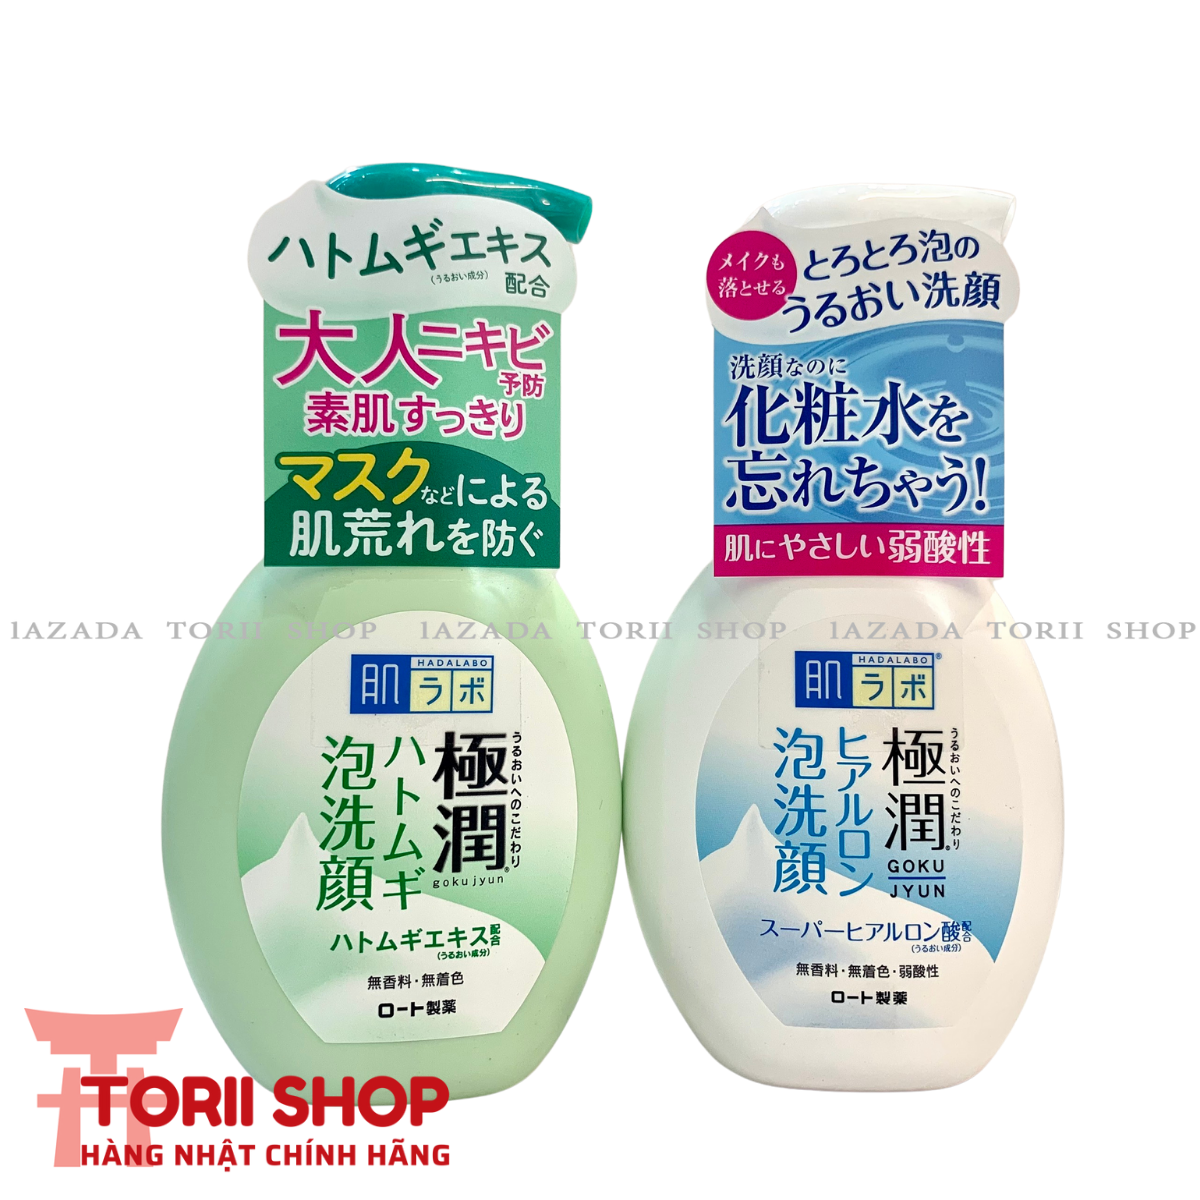 Sữa rửa mặt tạo bọt Hadalabo nội địa Nhật Bản 160ml đủ loại màu trắng cho da thường, màu xanh cho da nhờn, mụn Hada labo Gokujyun Foaming Cleanser chính hãng dạng chai tạo bọt sẵn - THEMIS Cosmetics Store